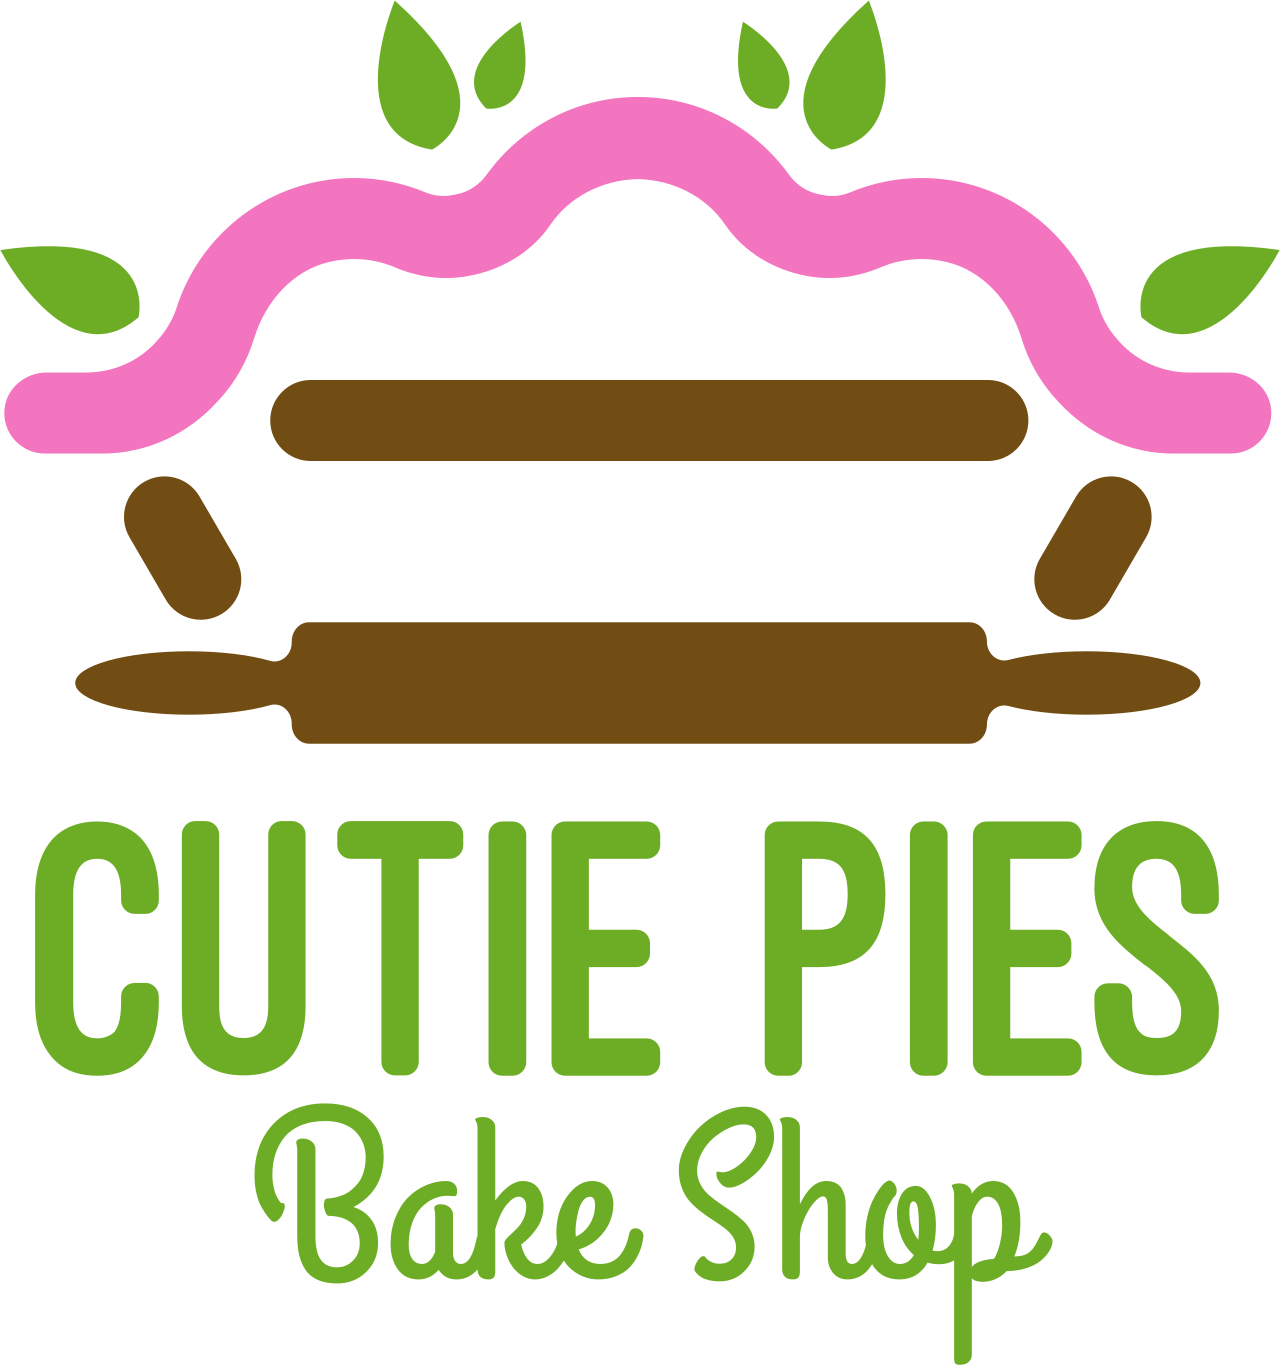 Cutie Pies Bake Shop logo